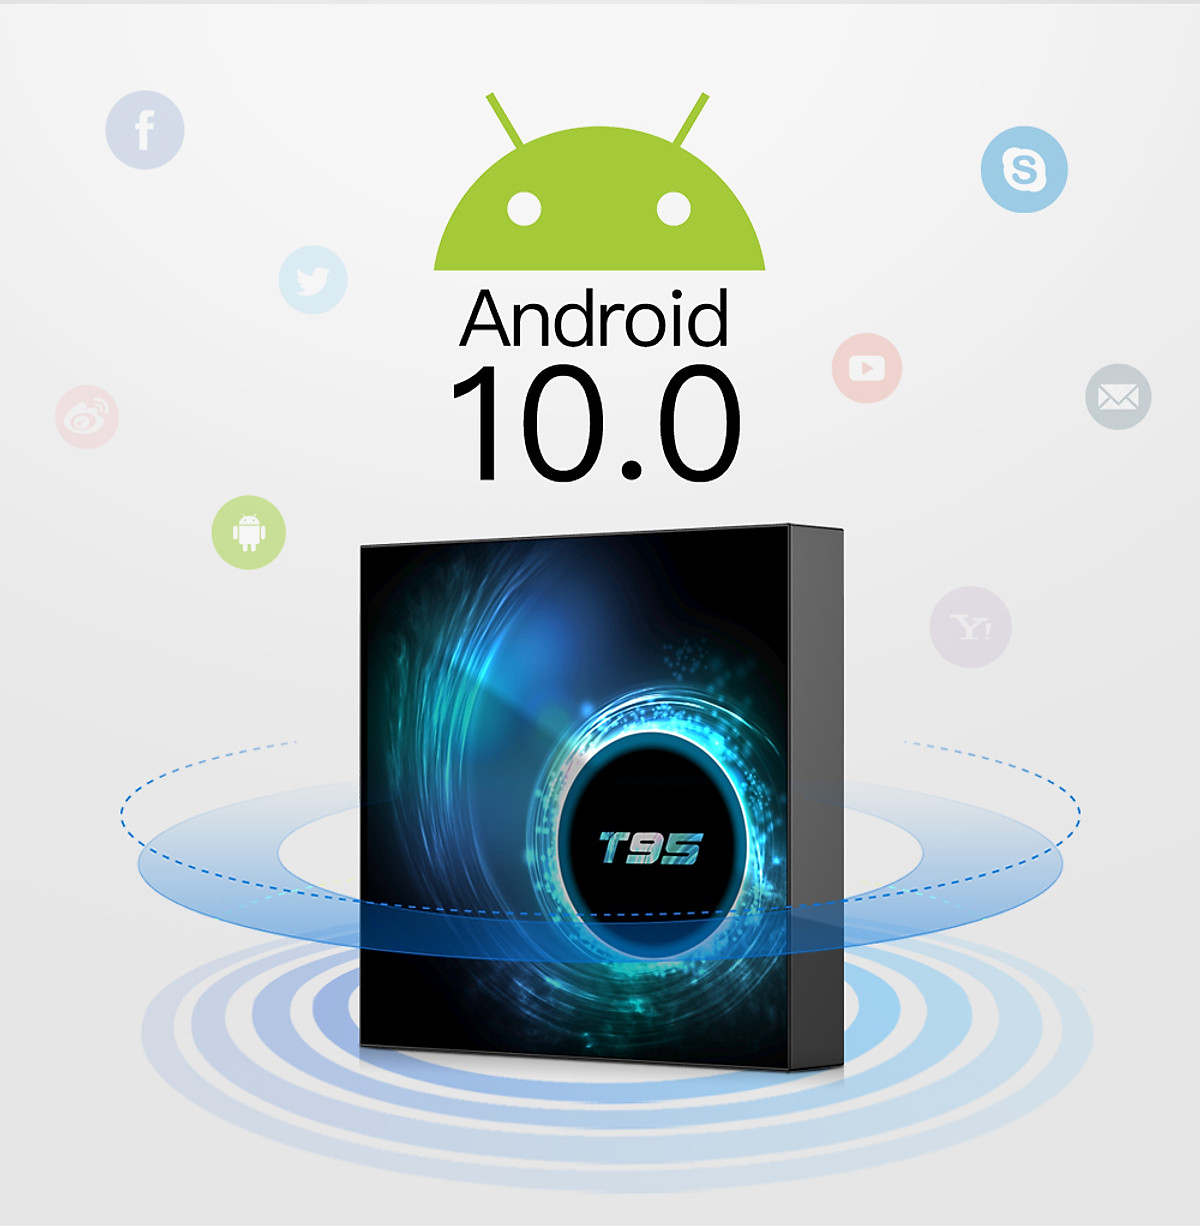 Android Tivi box T95 hệ điều hành RAM 4GB  ROM 32GB bluetooth , wifi 2 băng tần 2.4G và 5G cài sẵn bộ ứng dụng giải trí truyền hình cáp ,Phim HD miễn phí vĩnh viễn - Hàng Nhập Khẩu